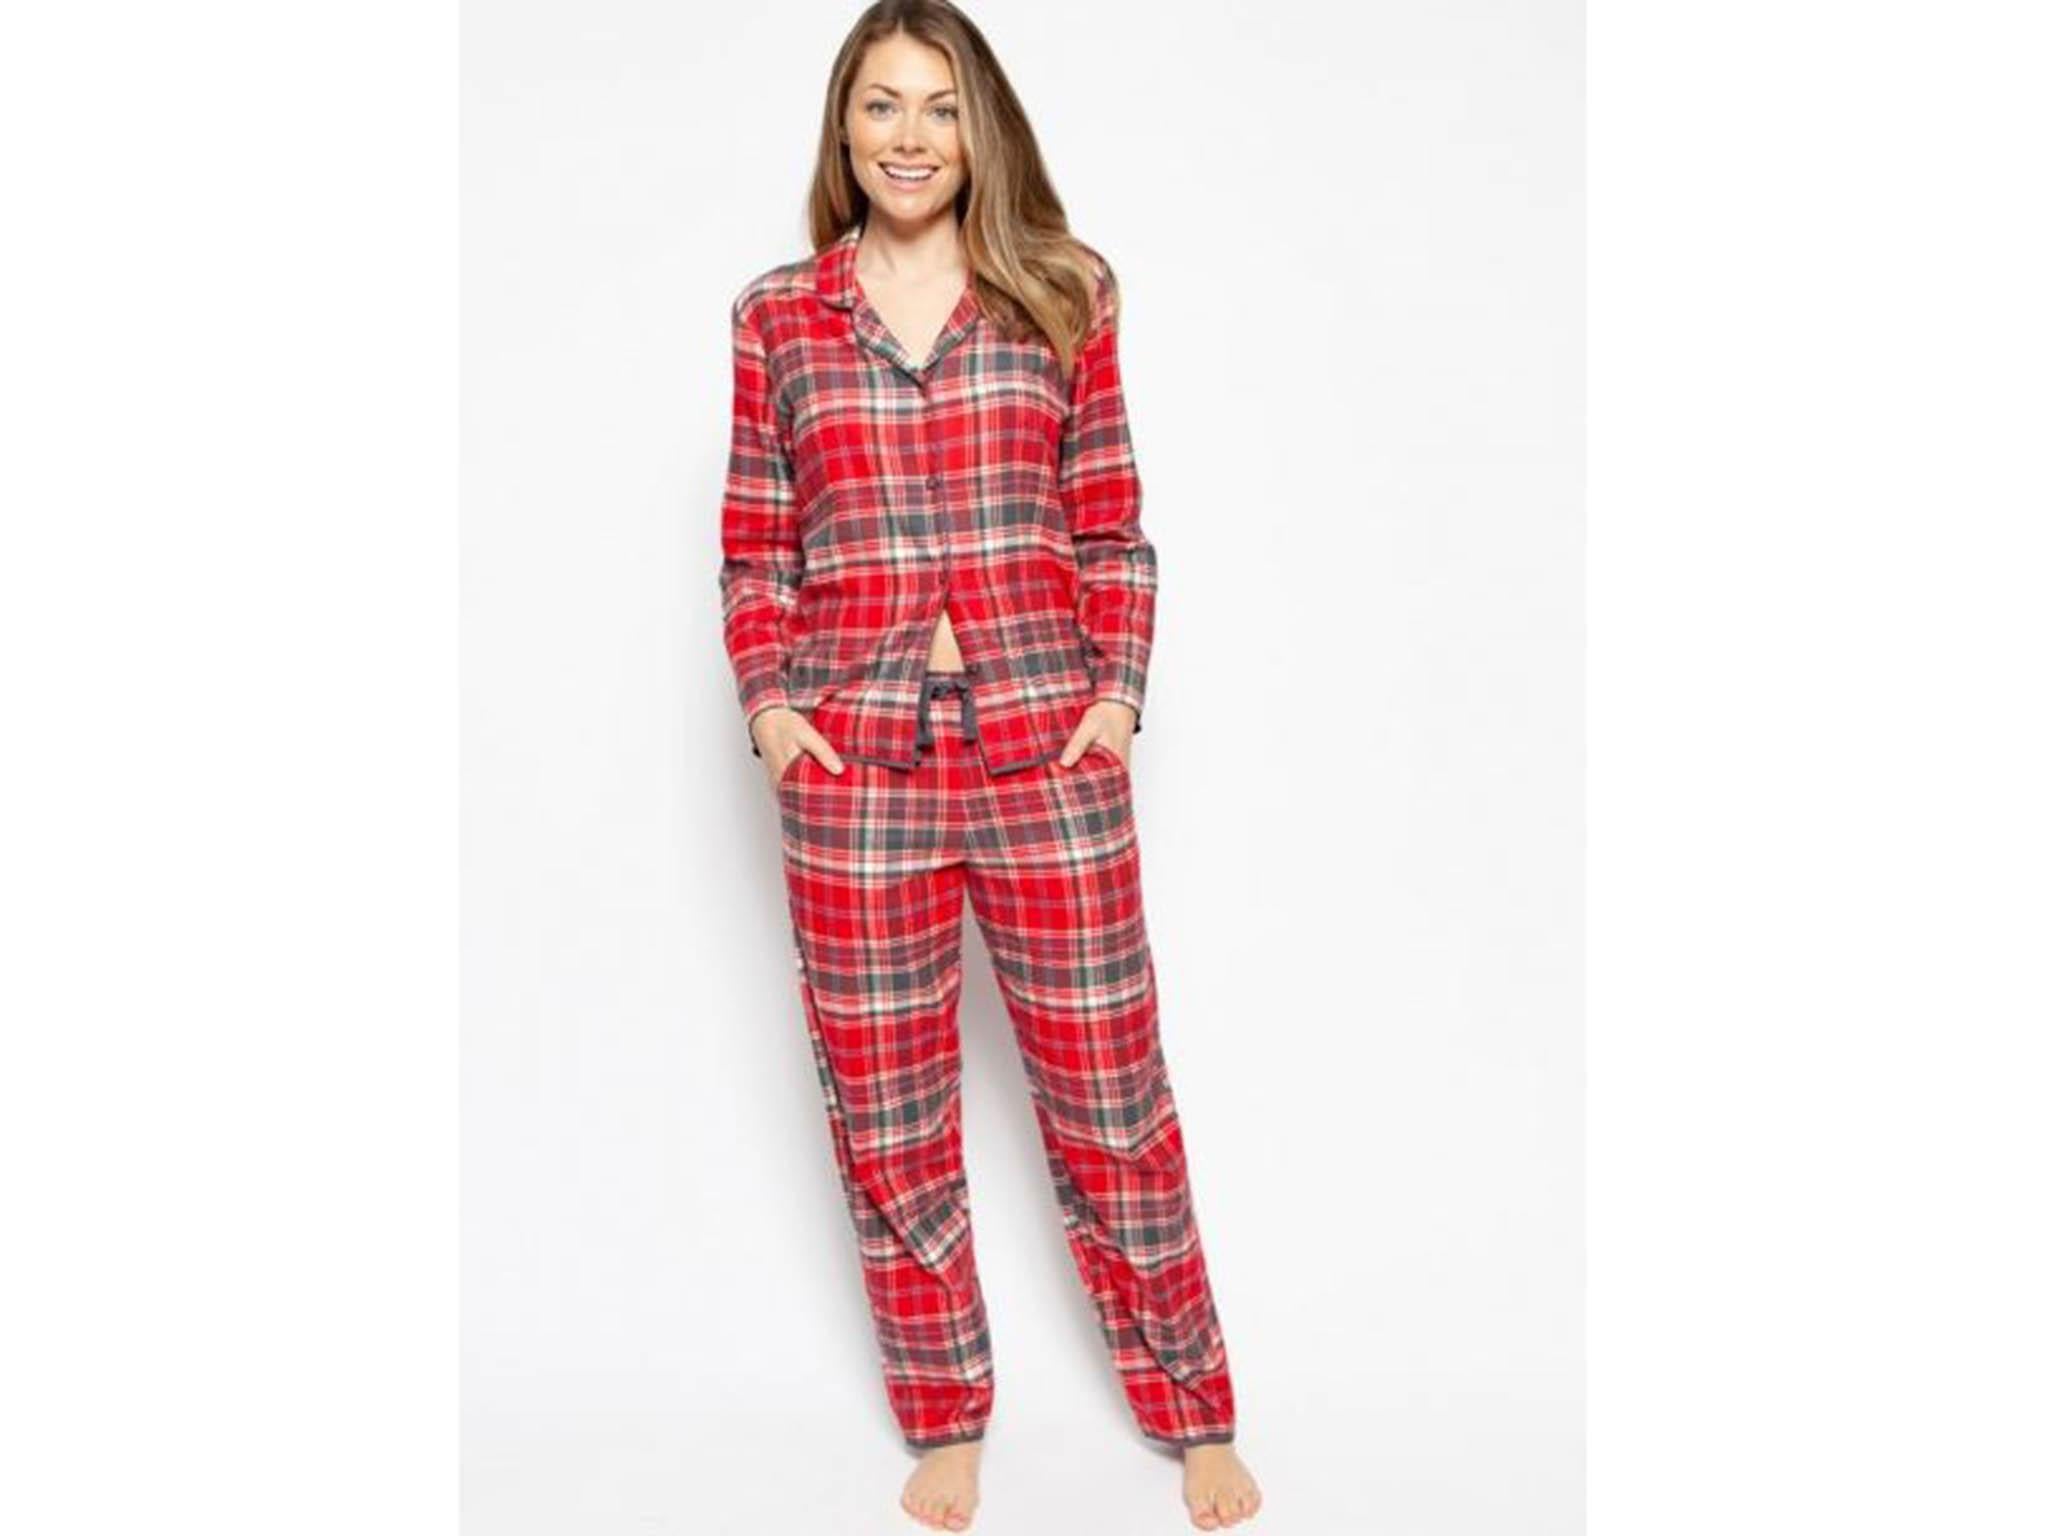 Red Tartan Pyjama Pants Women's Ladies Girls Nightwear Pant Loungewear